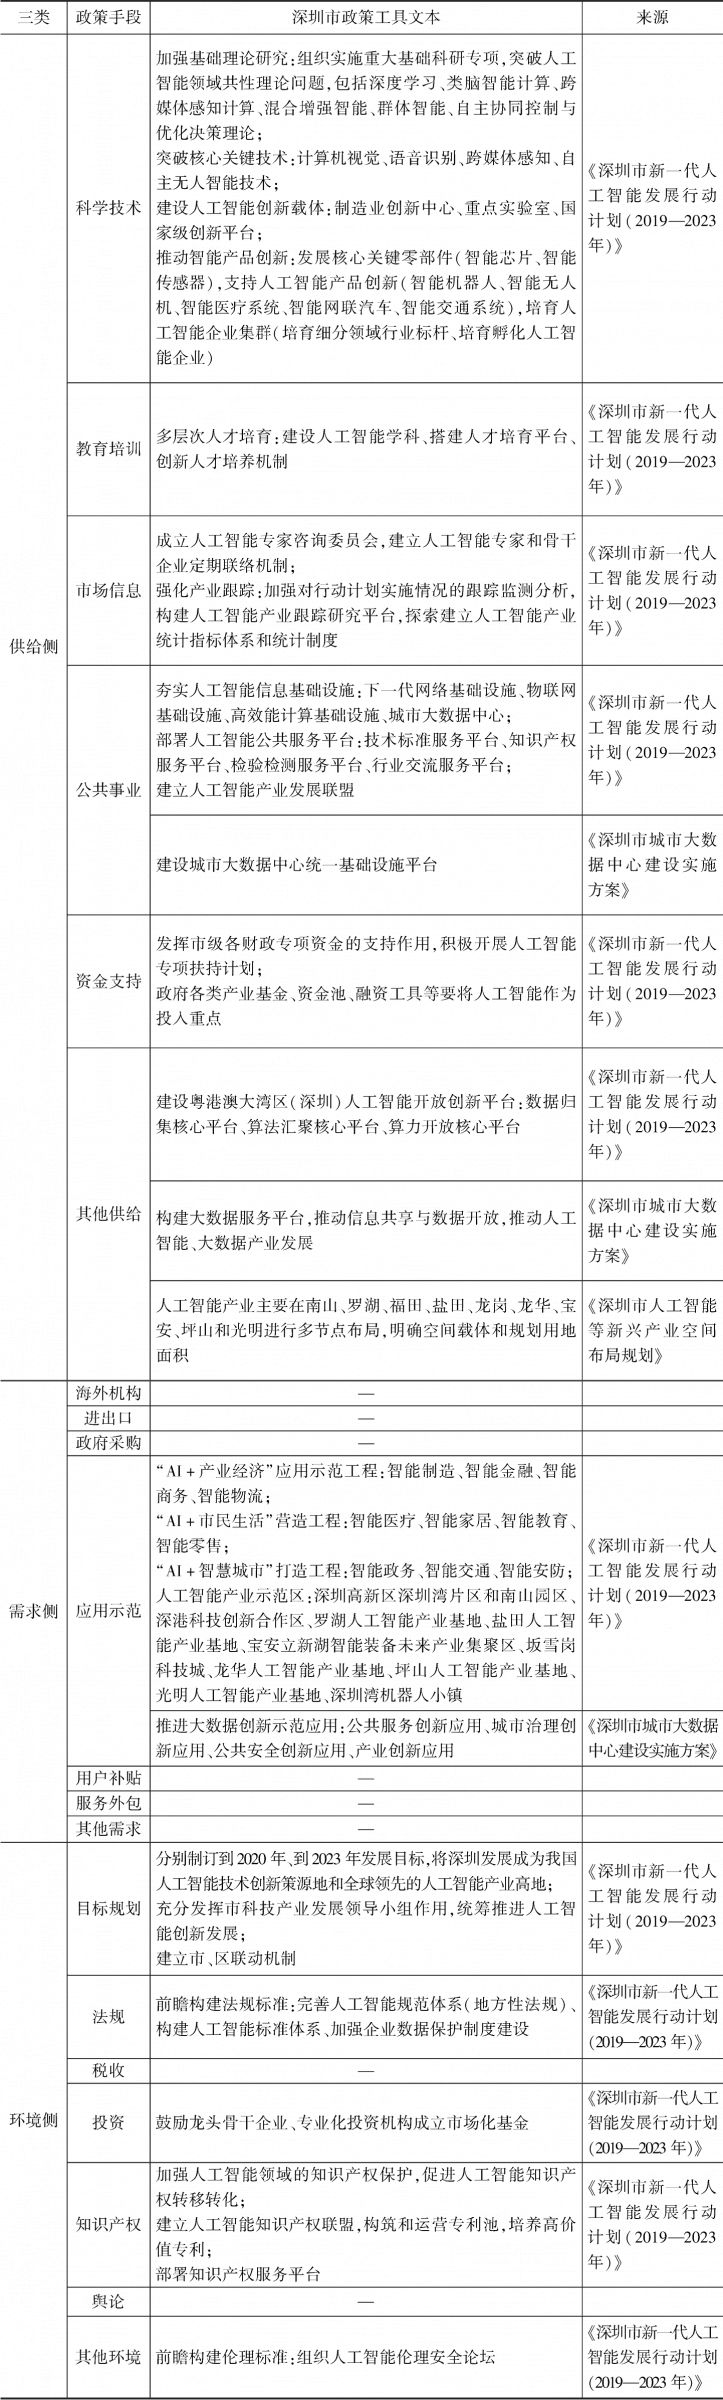 表2 深圳市人工智能典型政策工具文本的核心内容